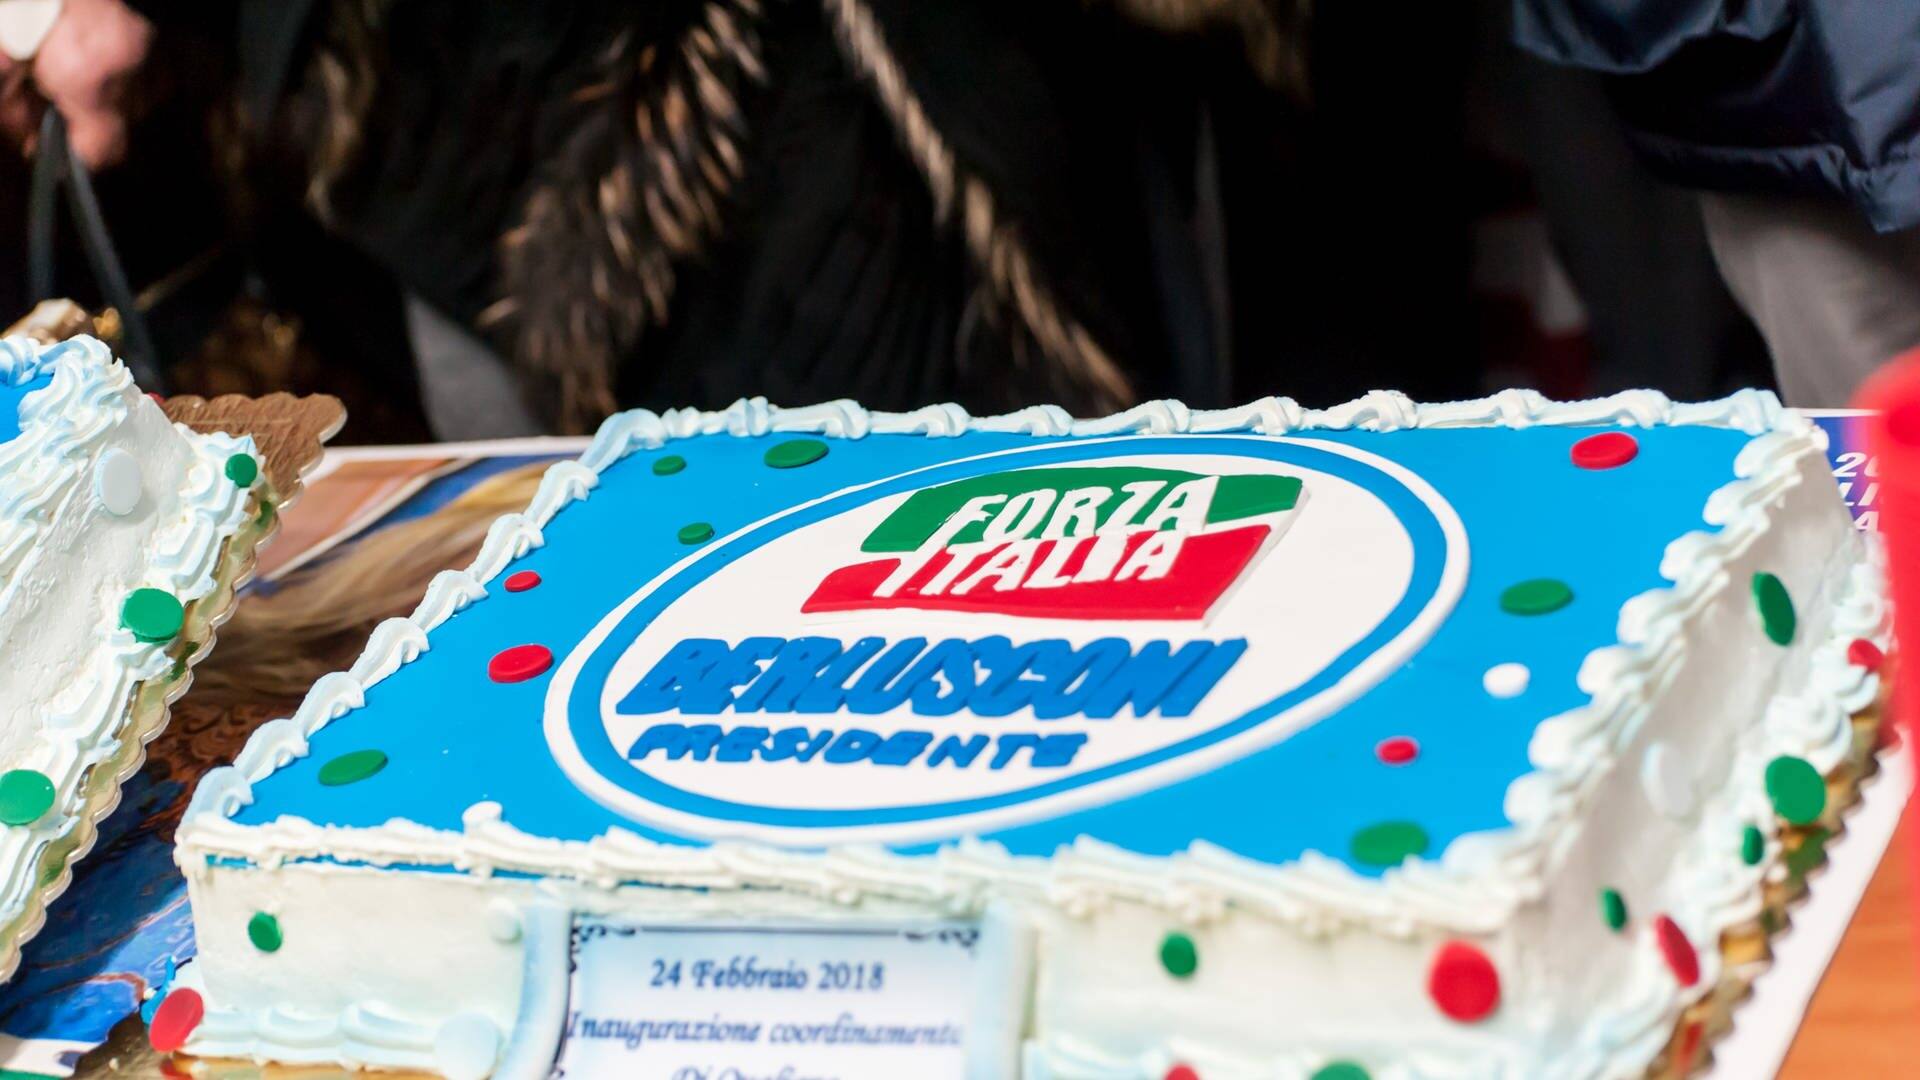 Ein Kuchen mit dem Logo der Partei „Forza Italia“ und der Aufschrift „Berlusconi Presidente“ steht auf einem Tisch (Foto: dpa Bildfunk, picture alliance / Sonia Brandolone/Pacific Press via ZUMA Wire/dpa | Sonia Brandolone)